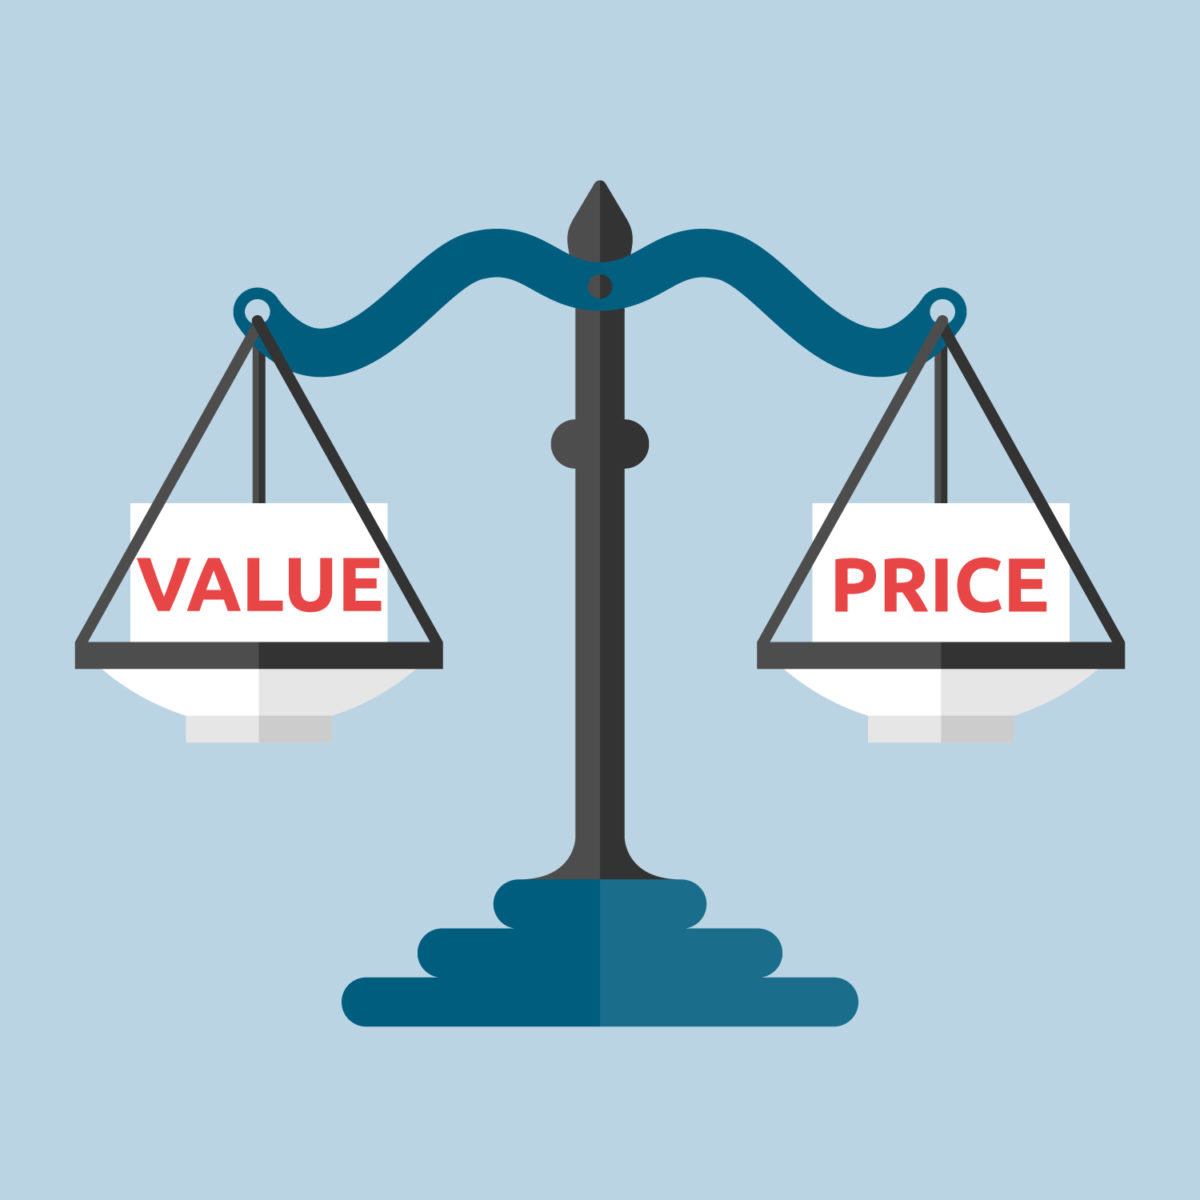 Legal Scale price versus value